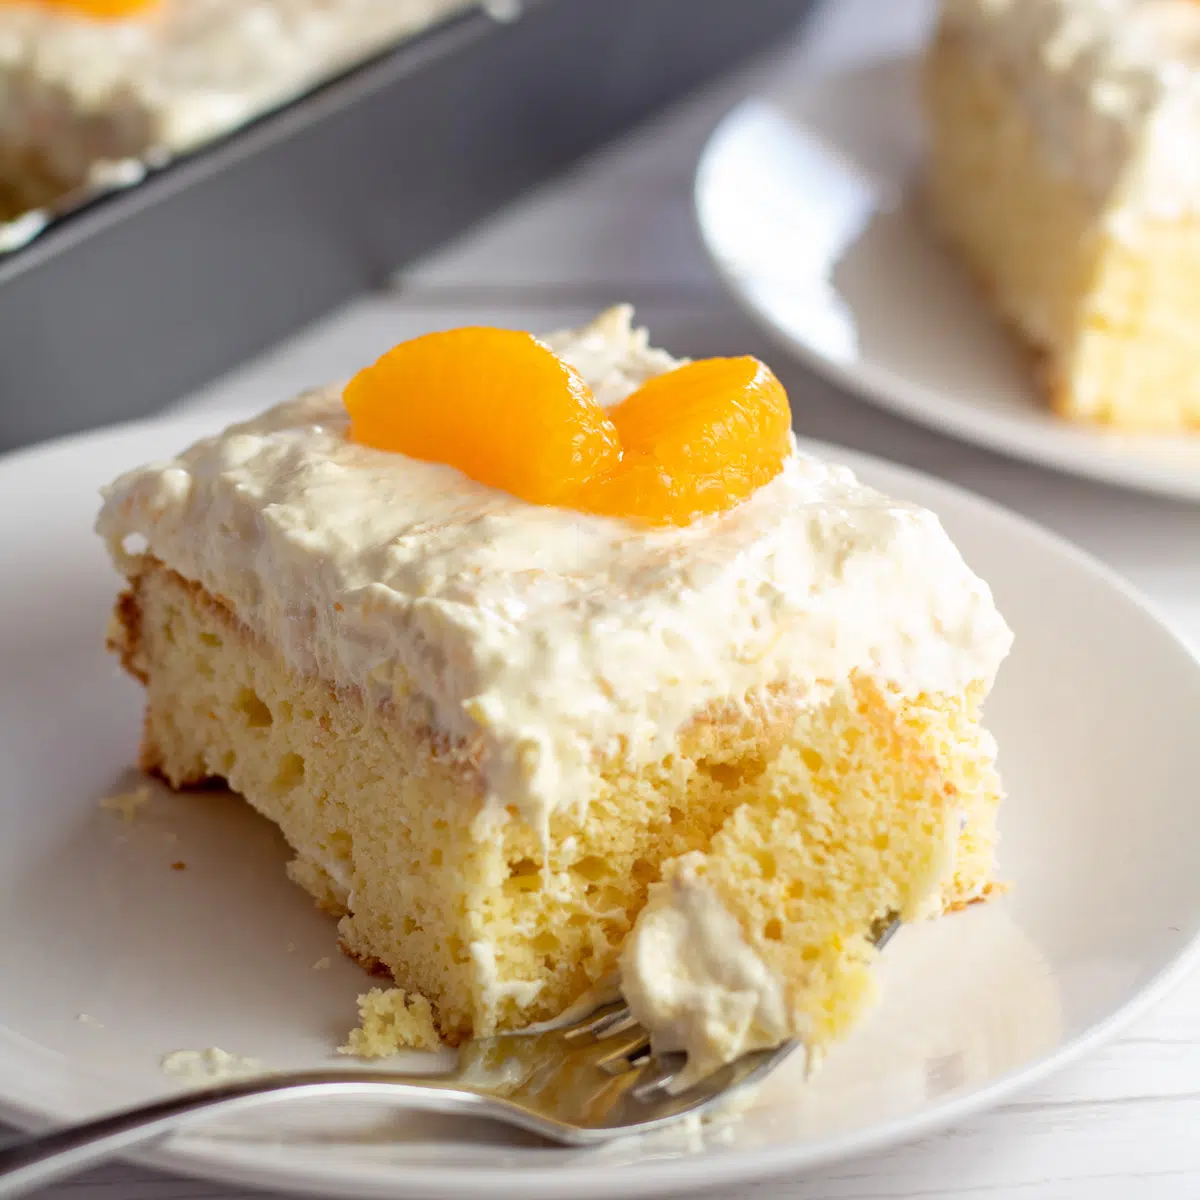 Immagine quadrata della fetta di torta di mandarino su un piatto bianco.